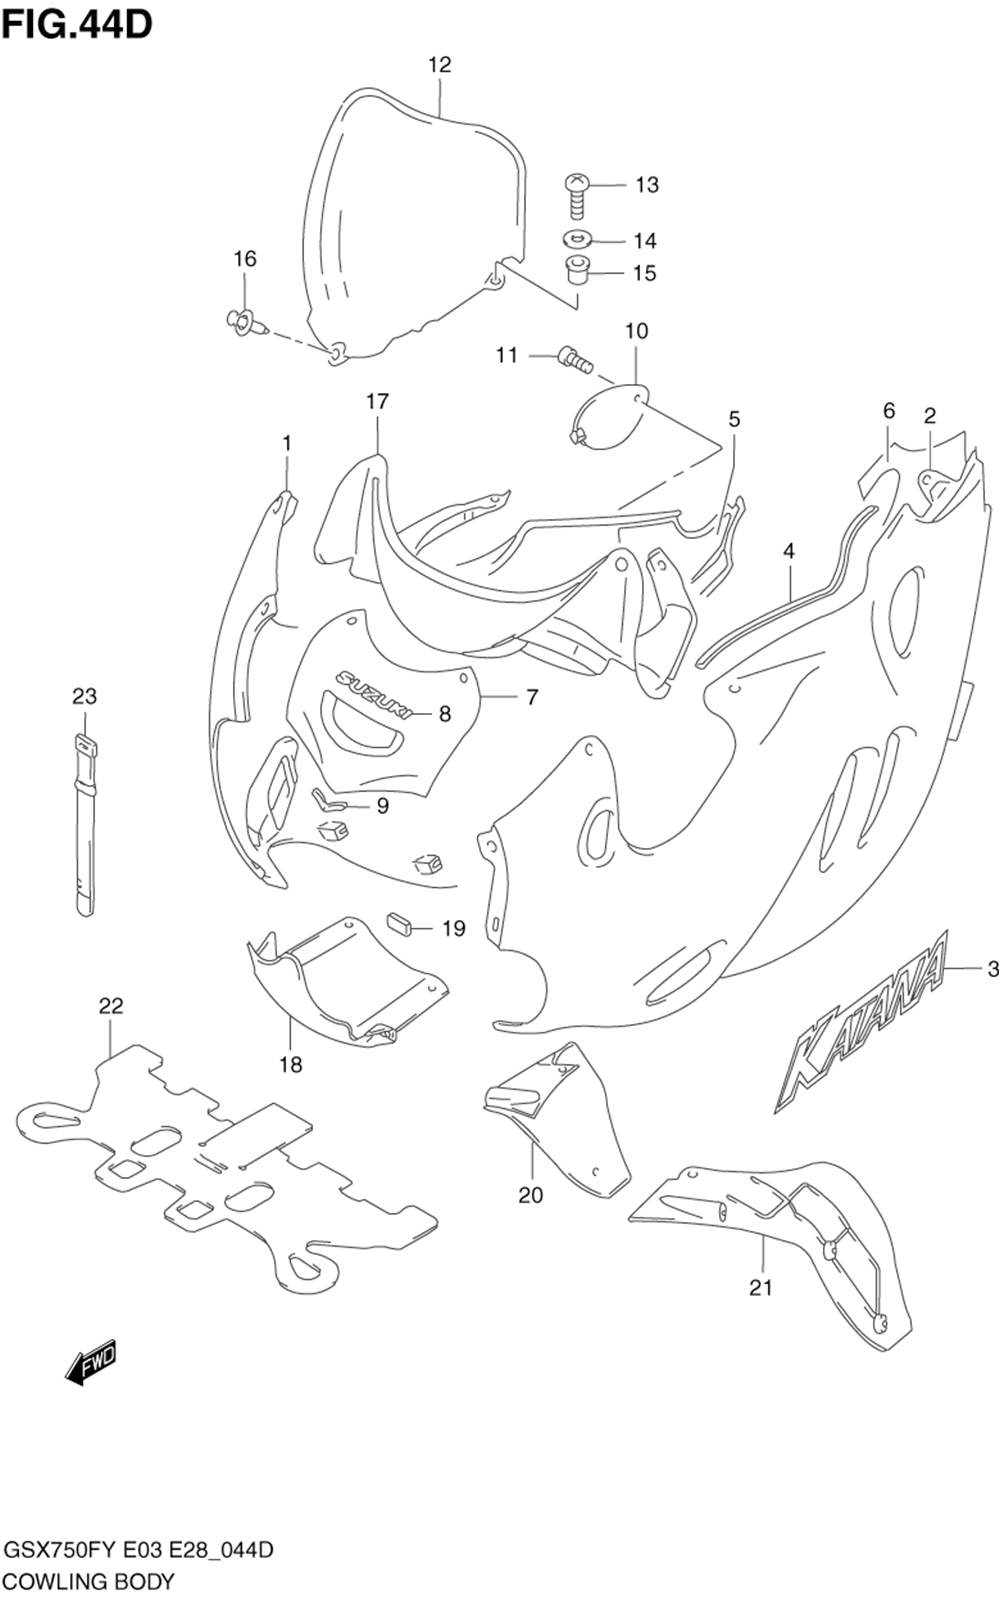 Cowling body (model k2)